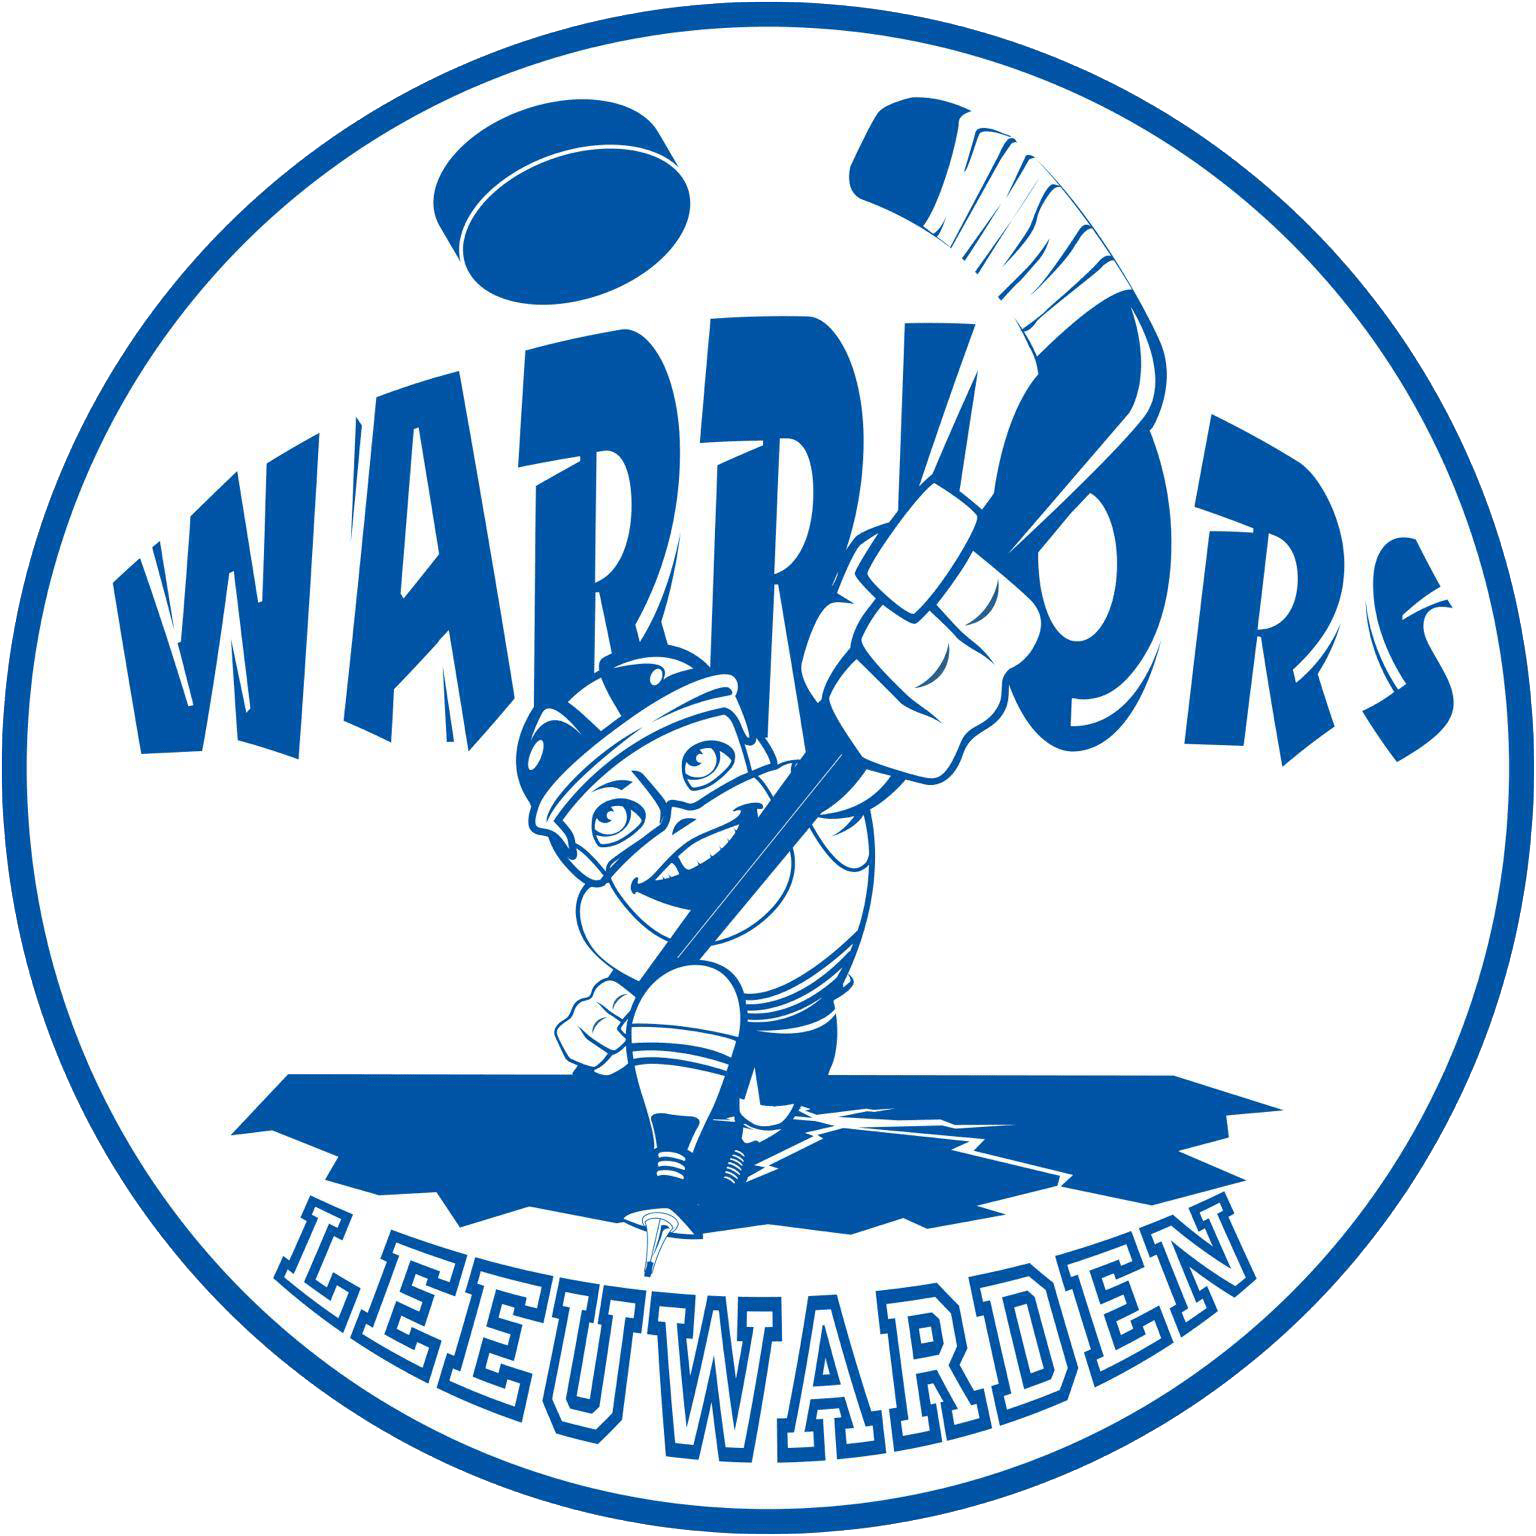 WARRIORS_LEEUWARDEN